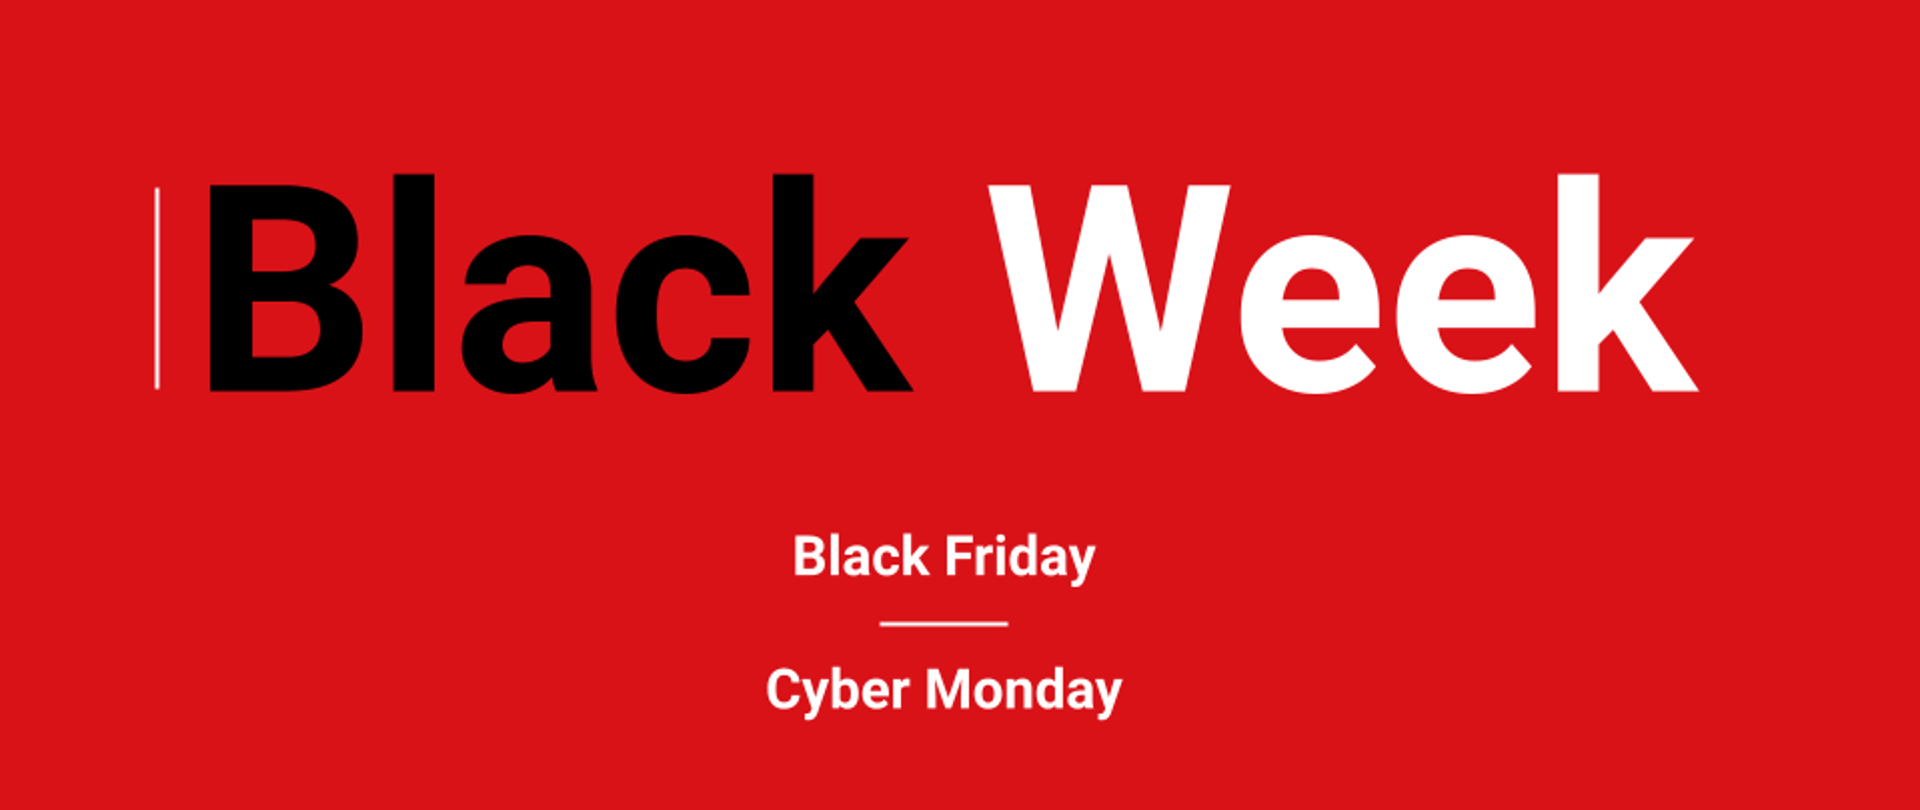 Black Week, Black Friday i Cyber Monday jak kupować, żeby nie żałować